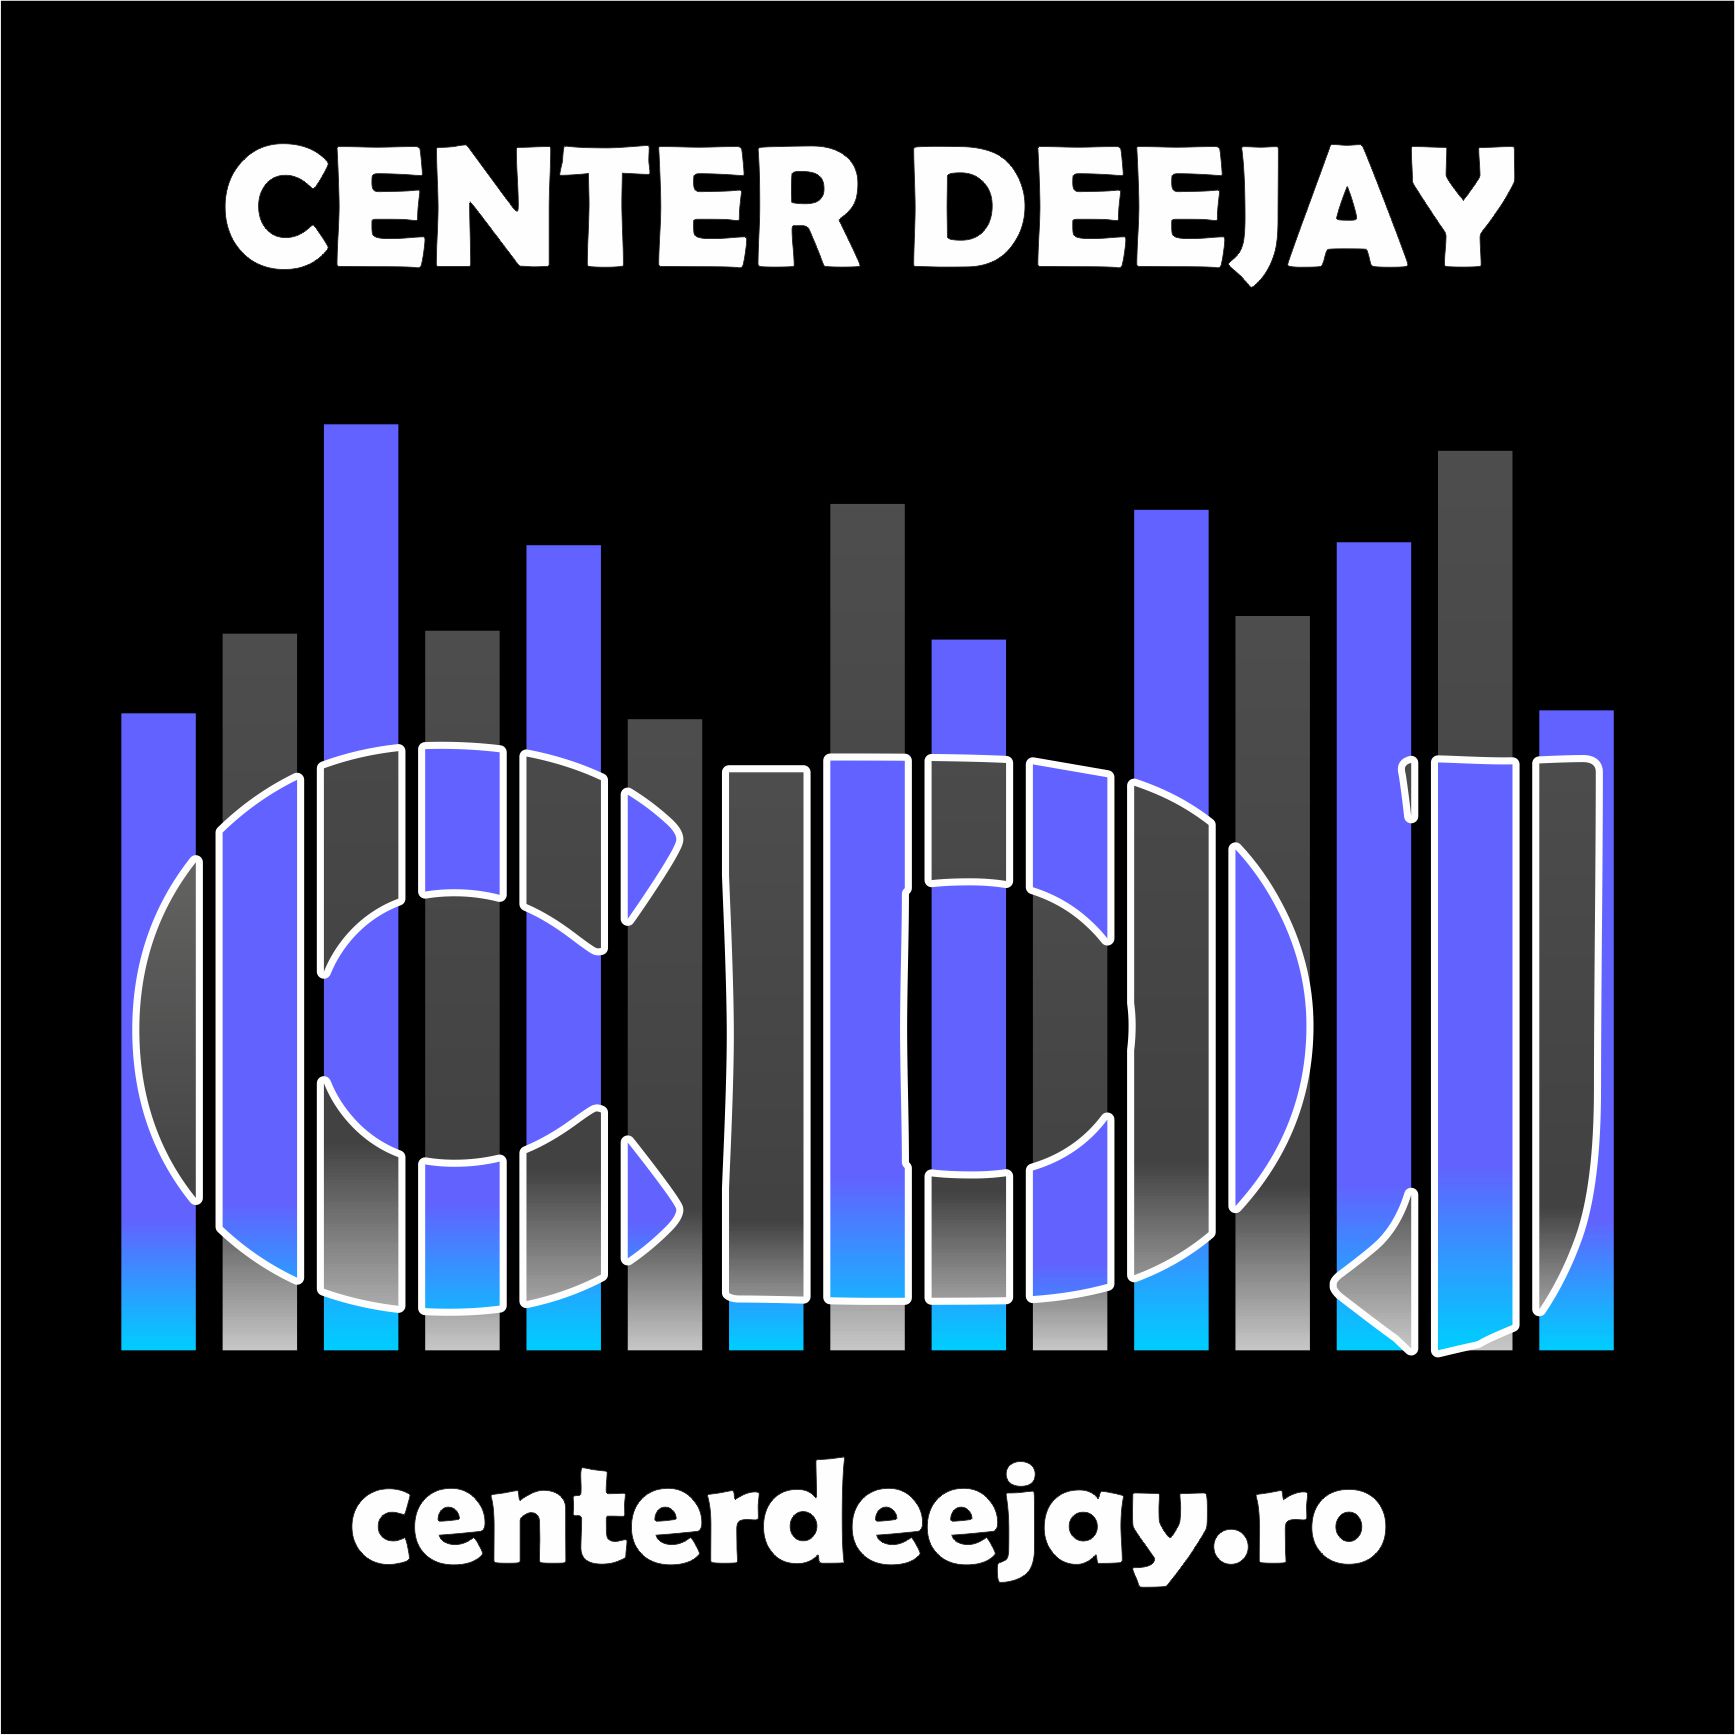 Center Deejay Association